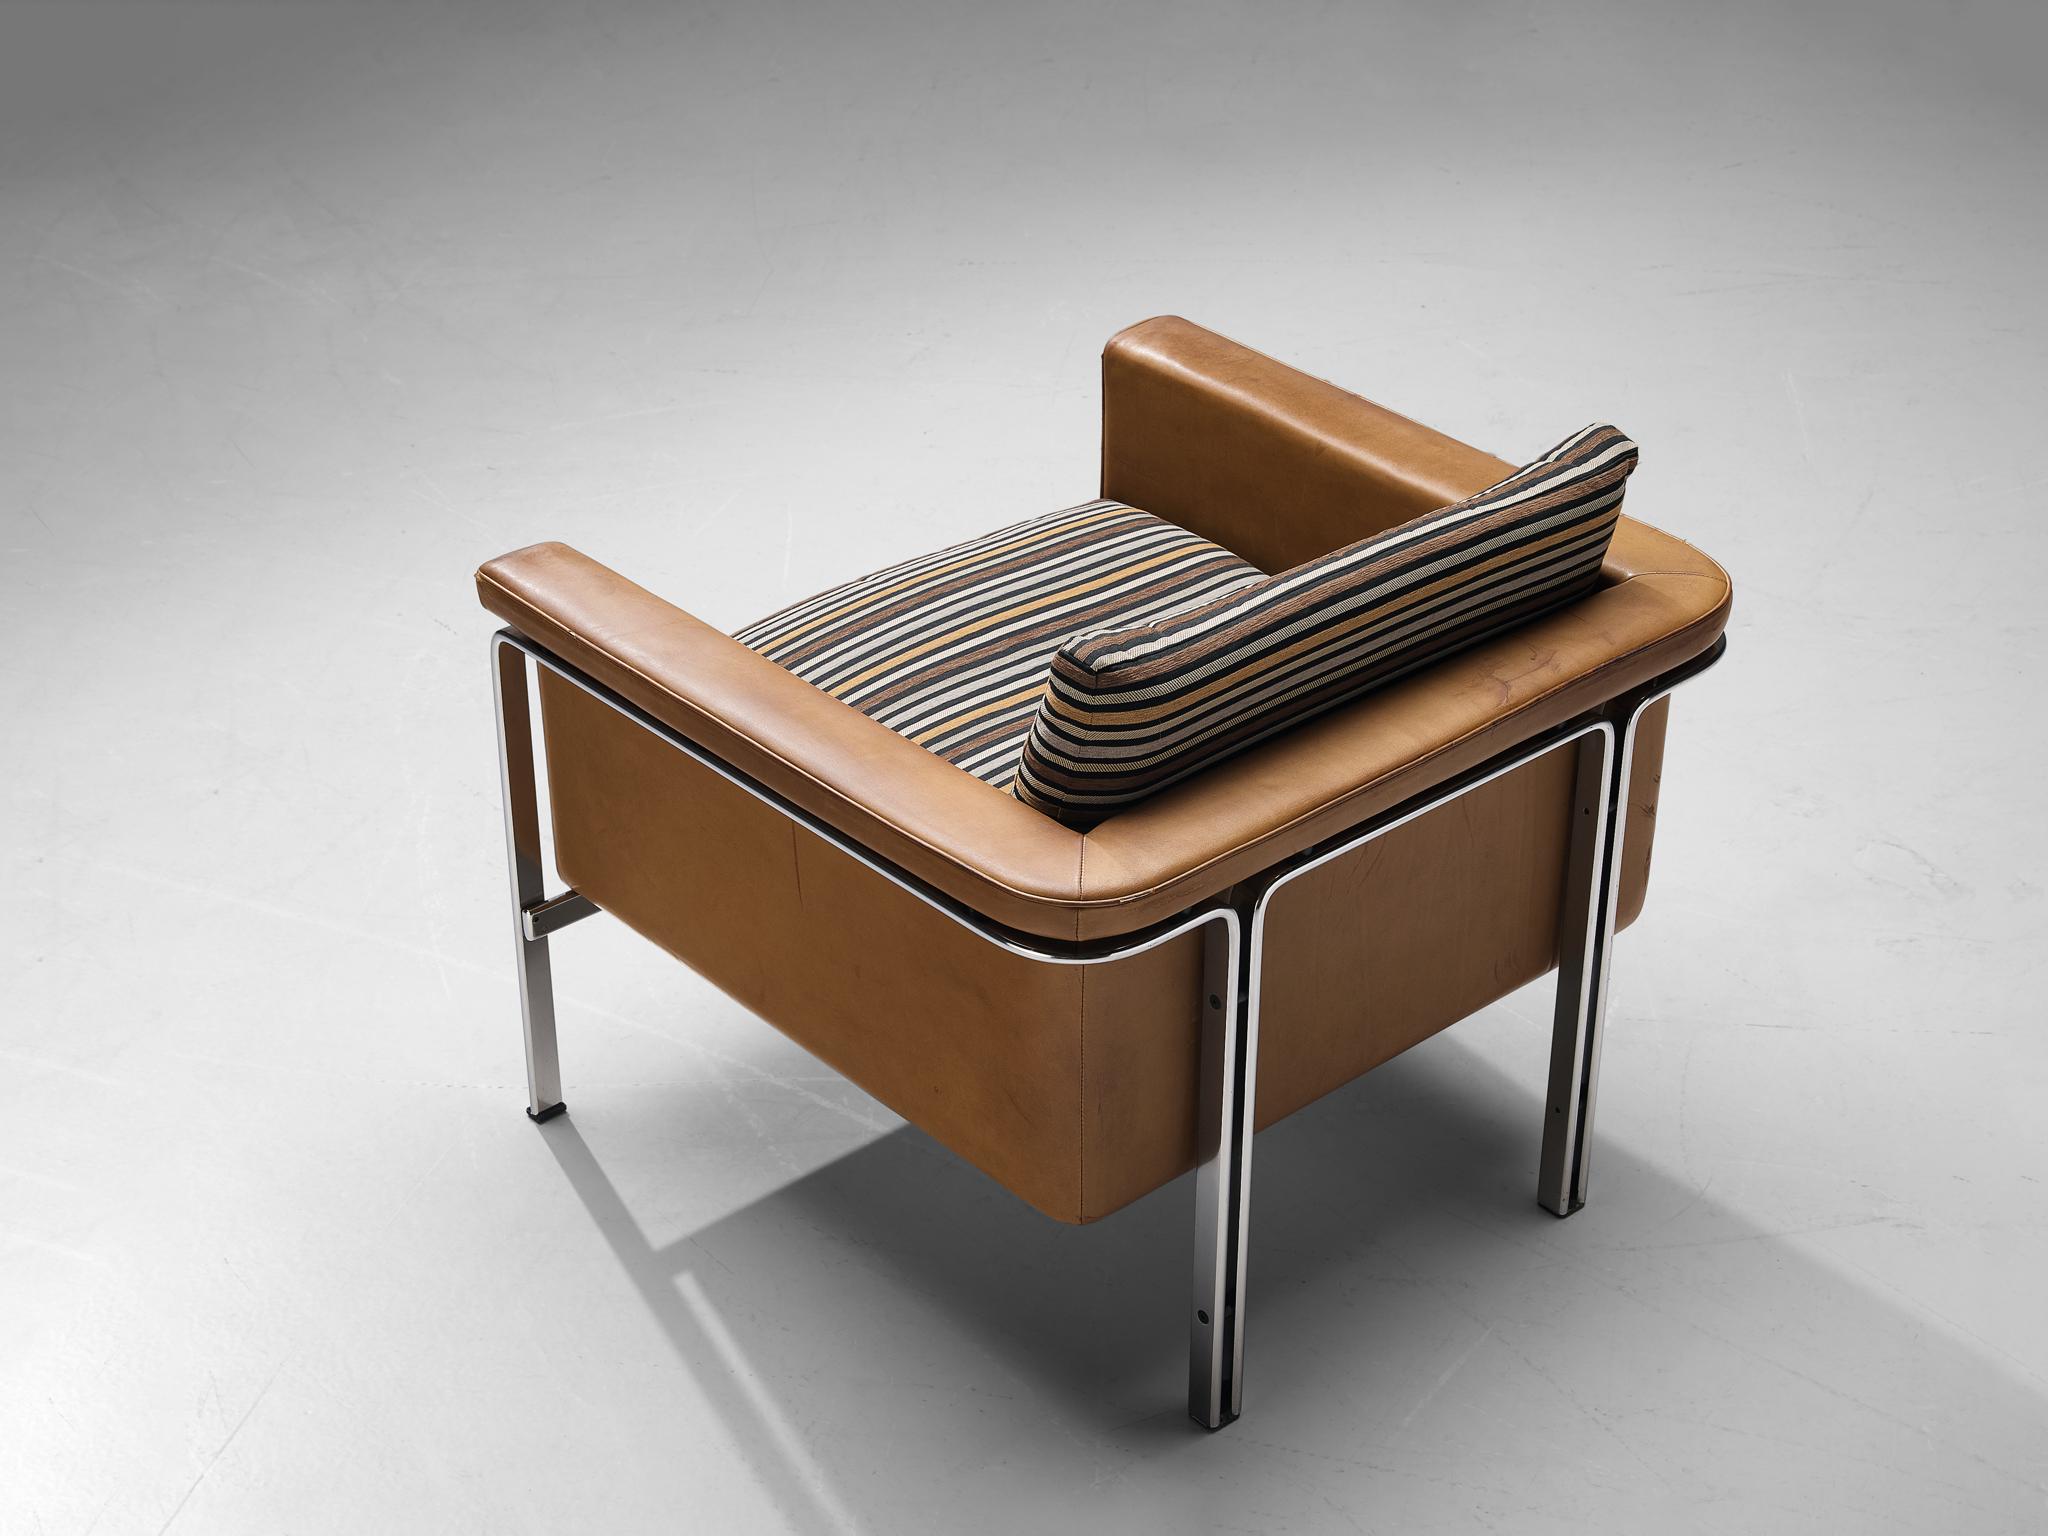 Horst Brüning pour Kill International, chaise longue modèle '6912', cuir, chrome, tissu, Allemagne, 1967. 

Ce fauteuil bien conçu montre une construction solide aux lignes délicates et aux bords arrondis. Le plus remarquable est le cadre chromé